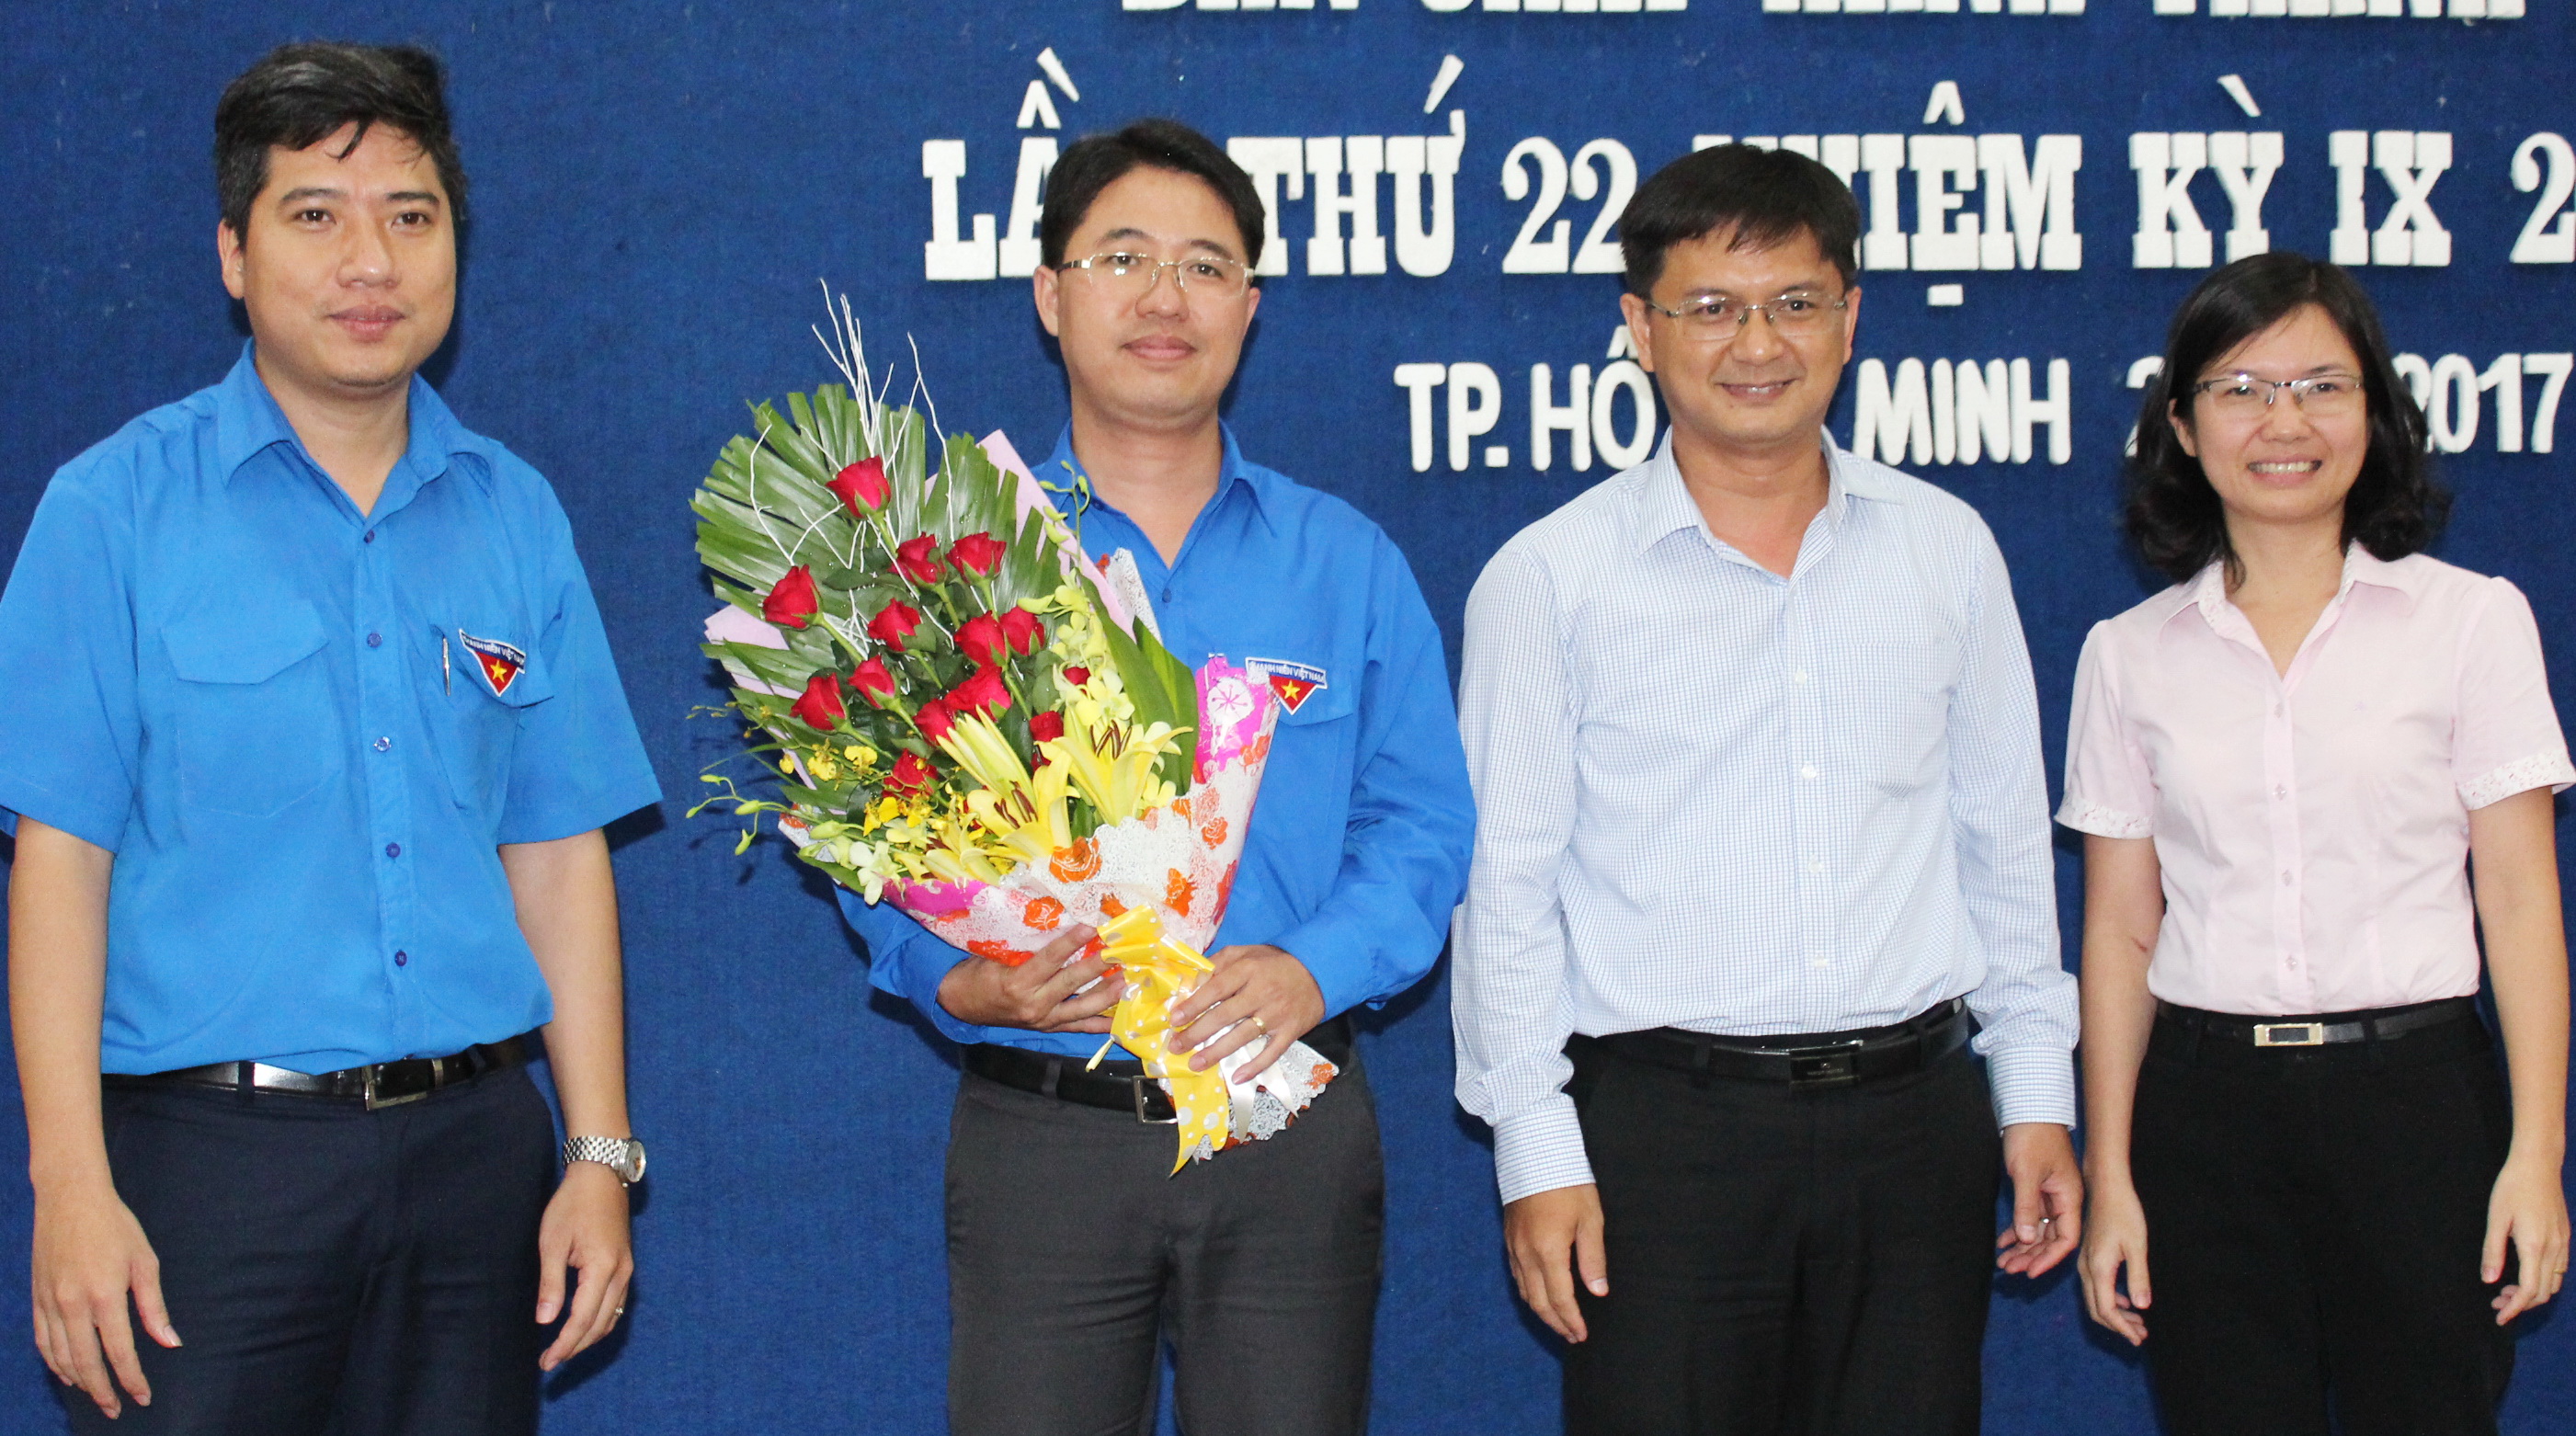 Tân Bí thư Thành đoàn TP.HCM Phạm Hồng Sơn (thứ hai từ trái qua) nhận hoa chúc mừng của thường trực Thành đoàn - Ảnh: Q.Linh